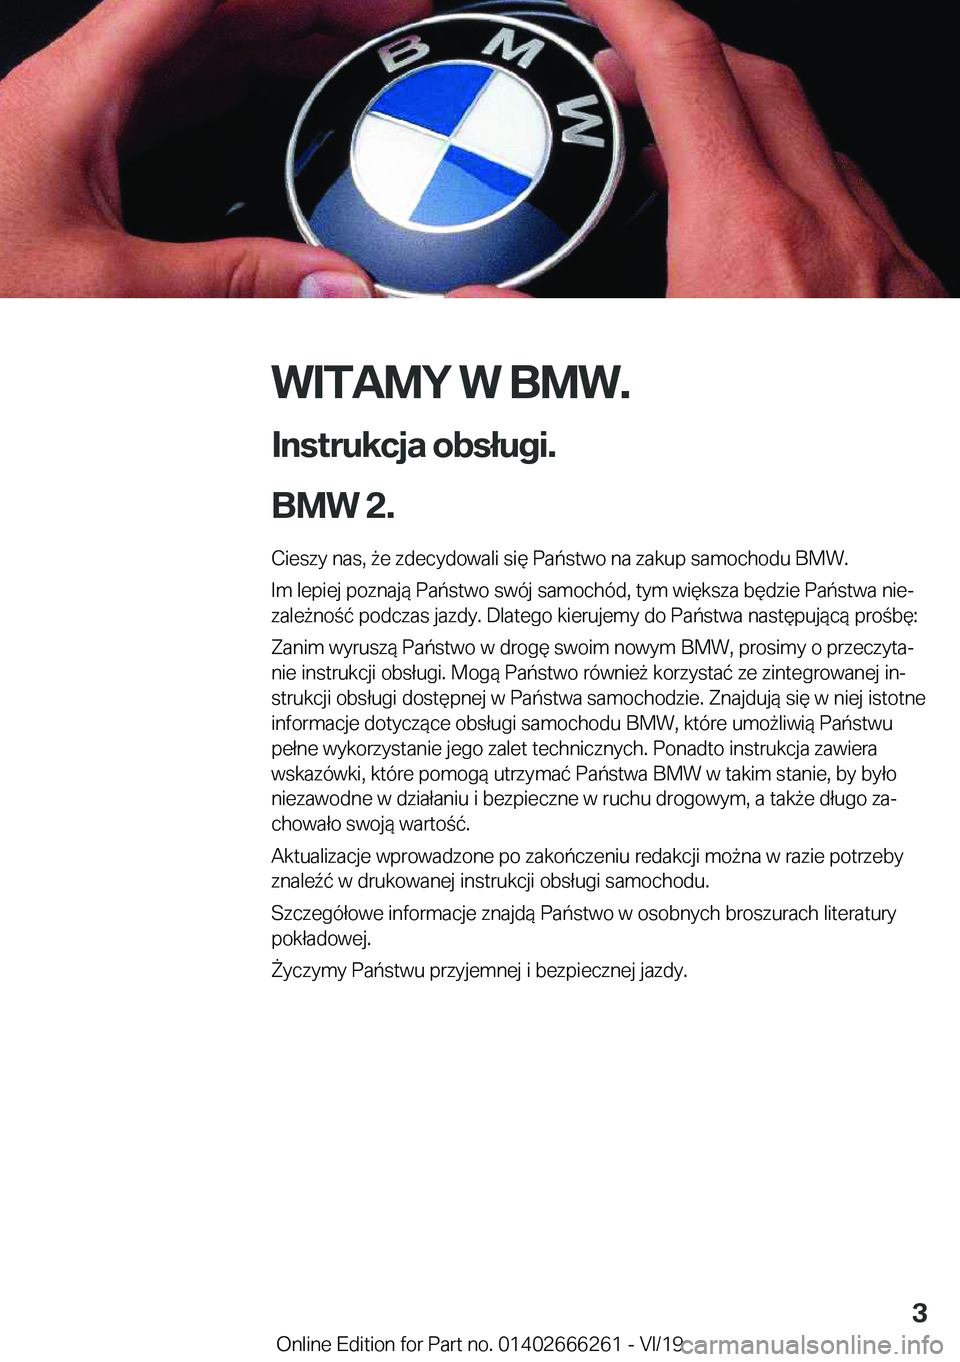 BMW 2 SERIES COUPE 2020  Instrukcja obsługi (in Polish) �W�I�T�A�M�Y��W��B�M�W�.
�I�n�s�t�r�u�k�c�j�a��o�b�s�ł�u�g�i�.
�B�M�W��2�.� �C�i�e�s�z�y��n�a�s�,�9�e��z�d�e�c�y�d�o�w�a�l�i��s�i�